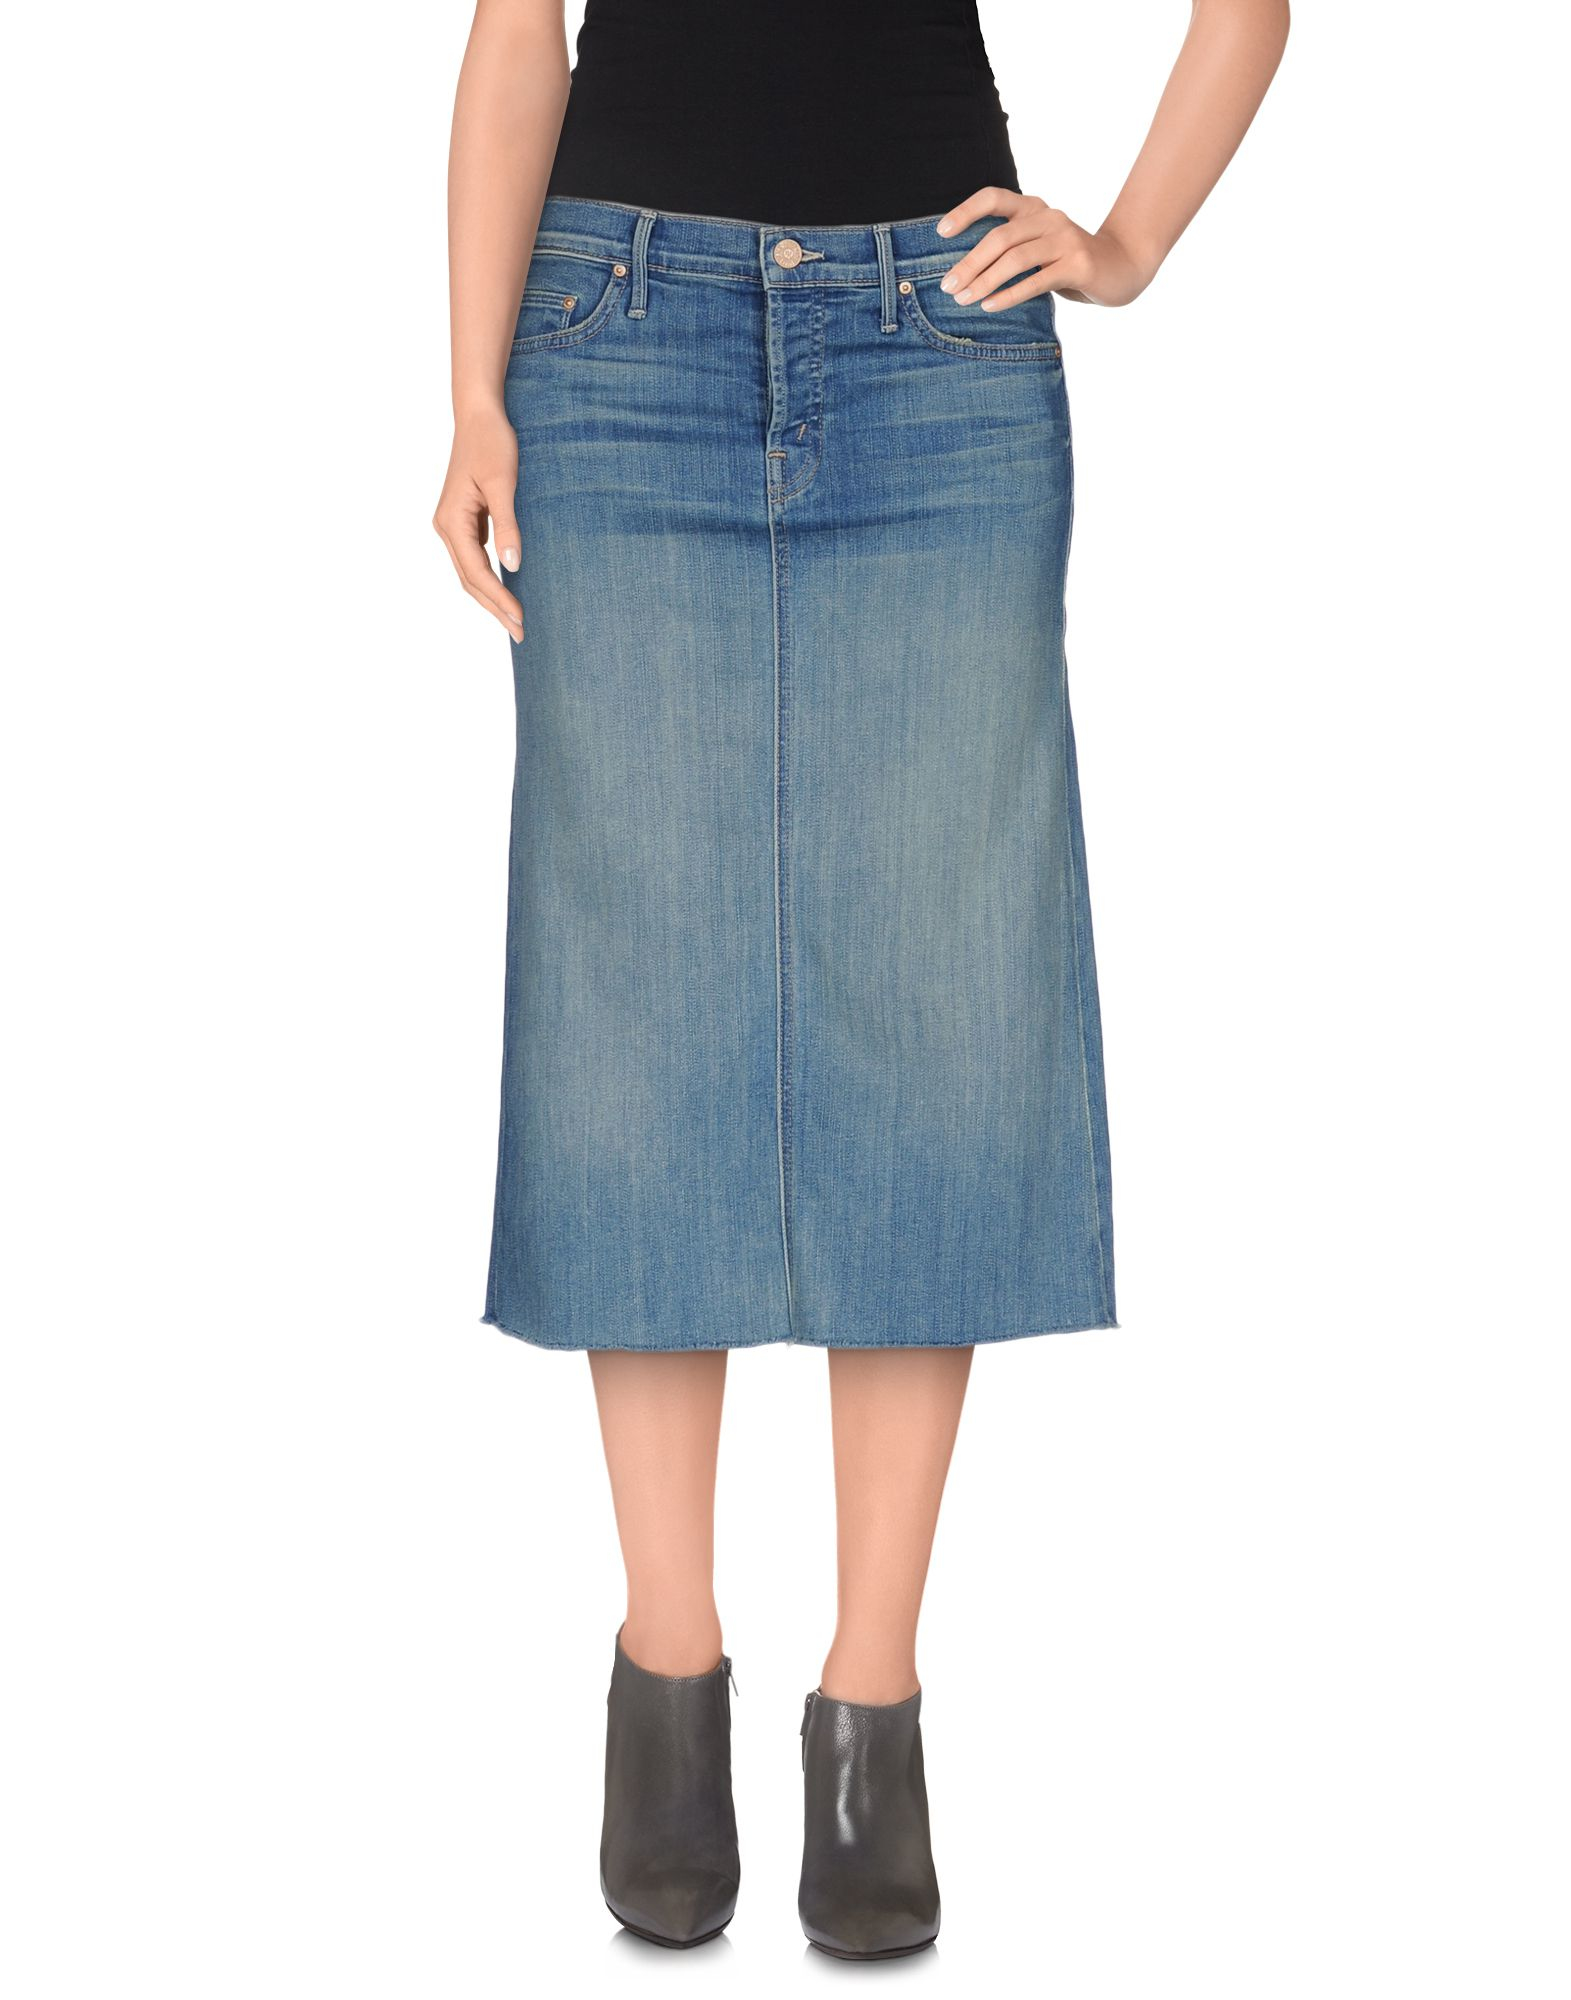 Lyst - Mother Denim Skirt in Blue